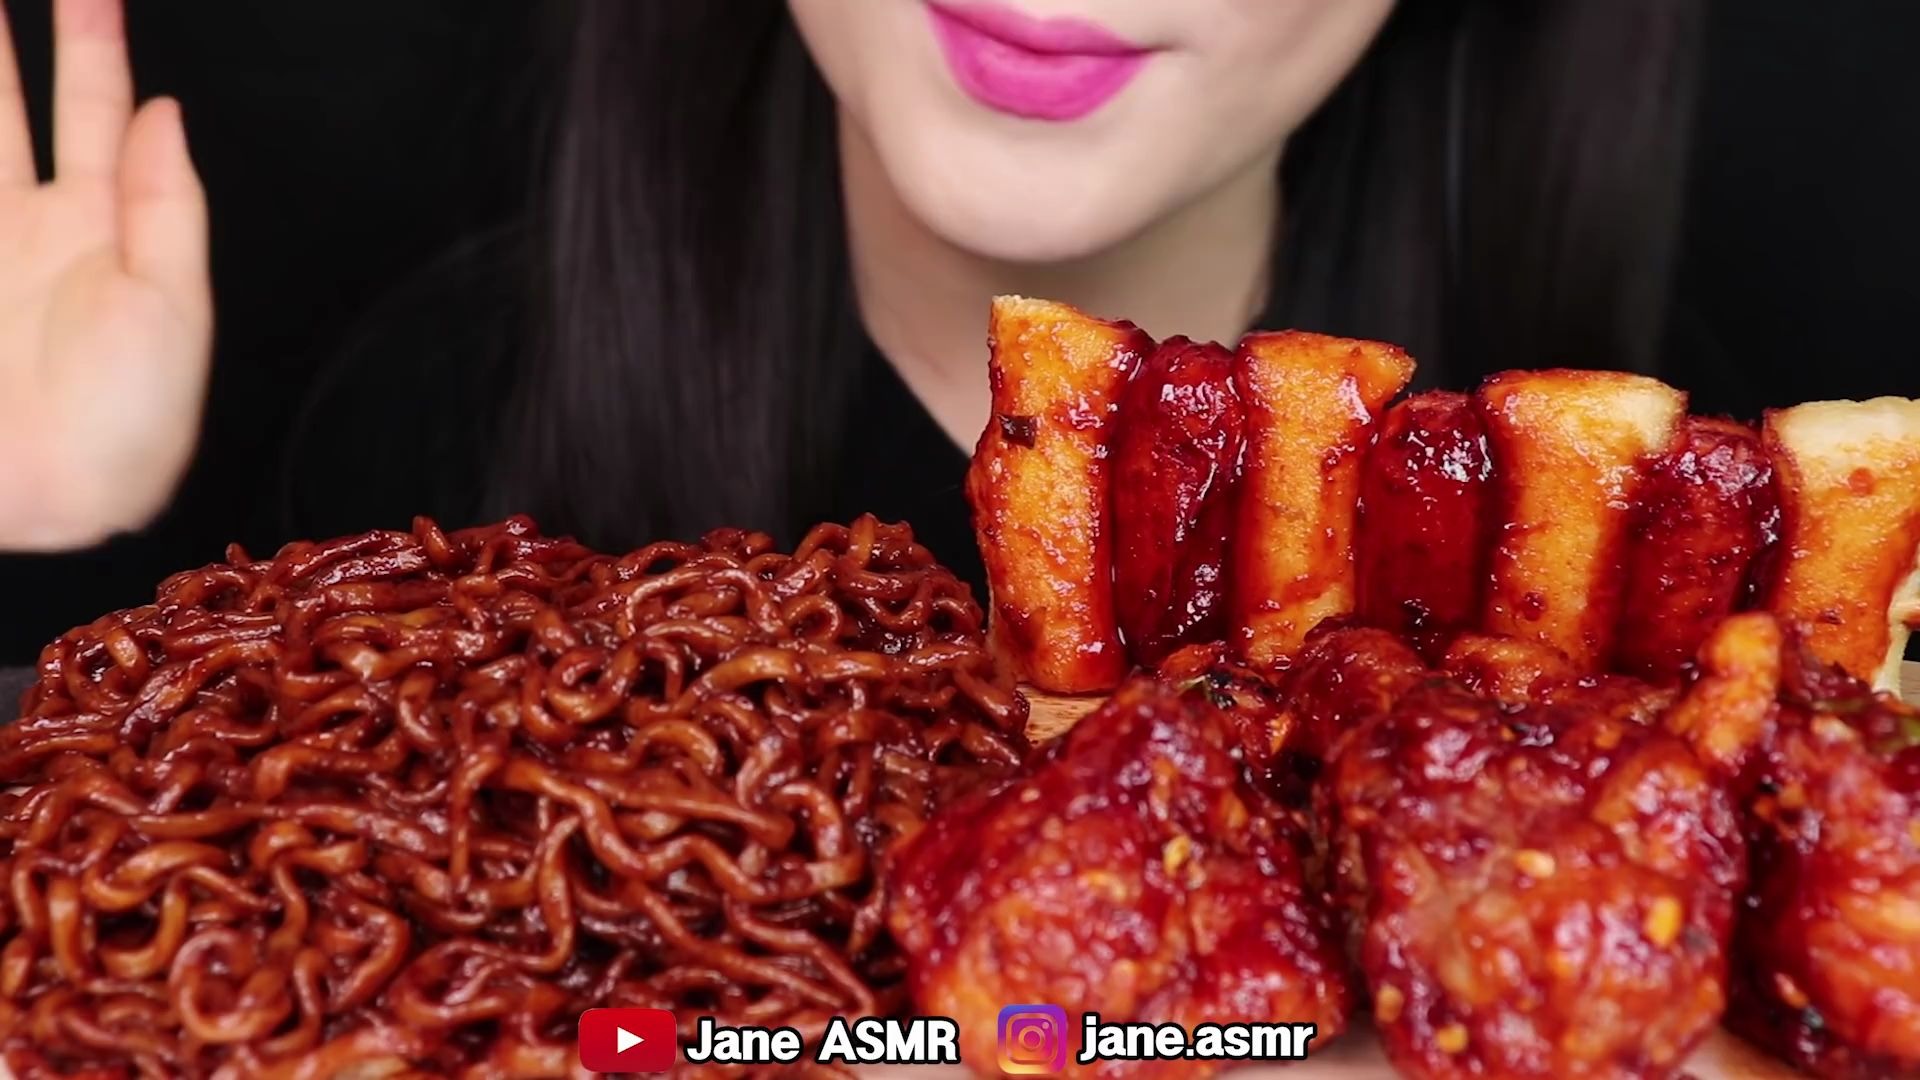 【大吃一斤 - Jane】 - 炸酱火鸡面 火鸡酱炸鸡 香辣芝士香肠串 腌萝卜块